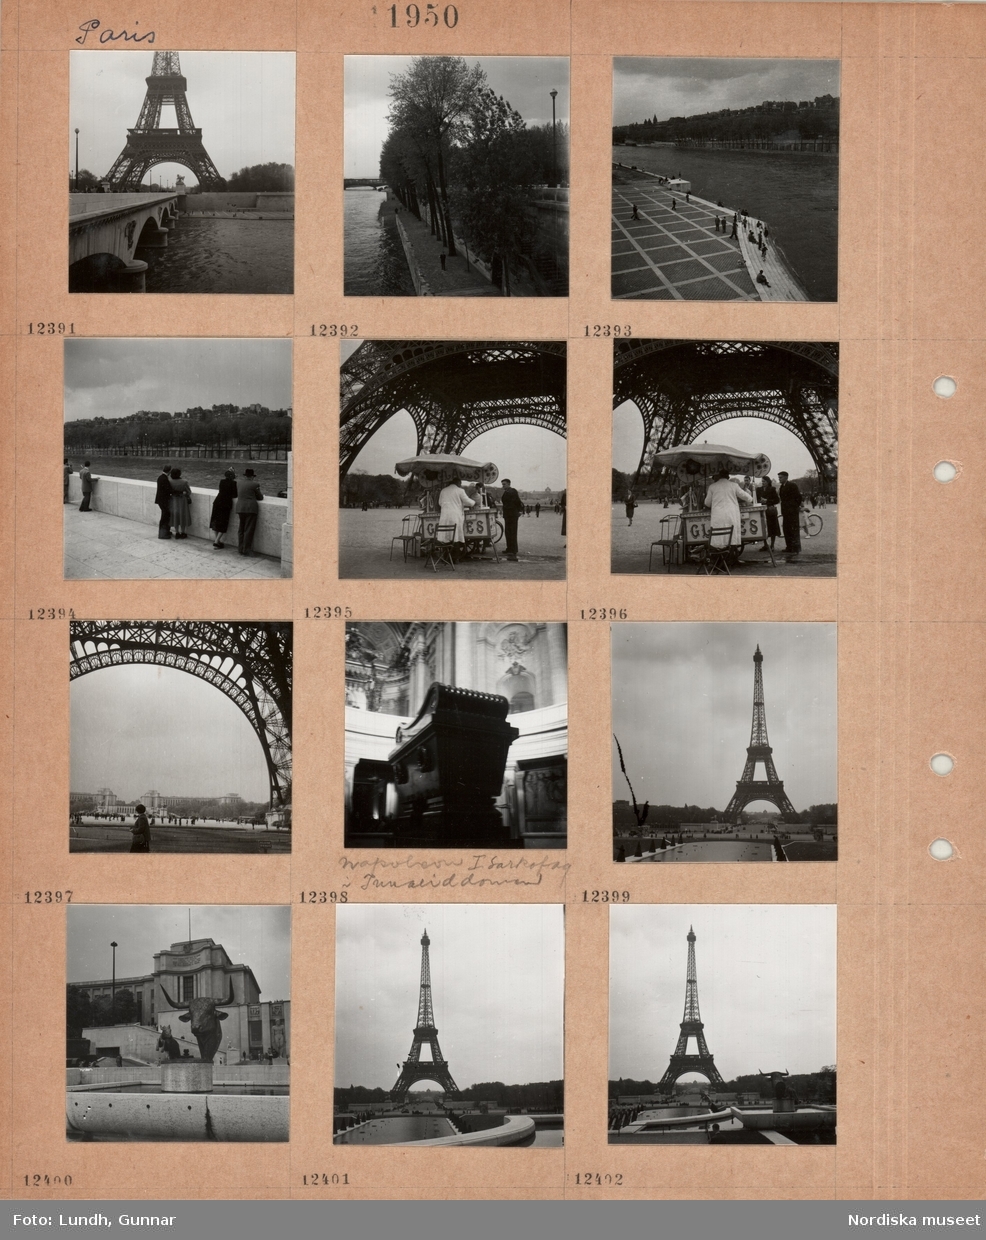 Motiv: Paris, bro över floden Seine, i bakgrunden Eiffeltornet, strandpromenad längs flod, träd, kaj med trappa, gående och personer som sitter på trappan, personer lutar sig mot balustrad vid floden, glassförsäljning vid foten av Eiffeltornet, vy från Eiffeltornets fot mot stor byggnad bakom öppen plats, interiör kyrka, Napoleons grav i Invaliddomen, Eiffeltornet, damm med skulpturer, tjurhuvud.